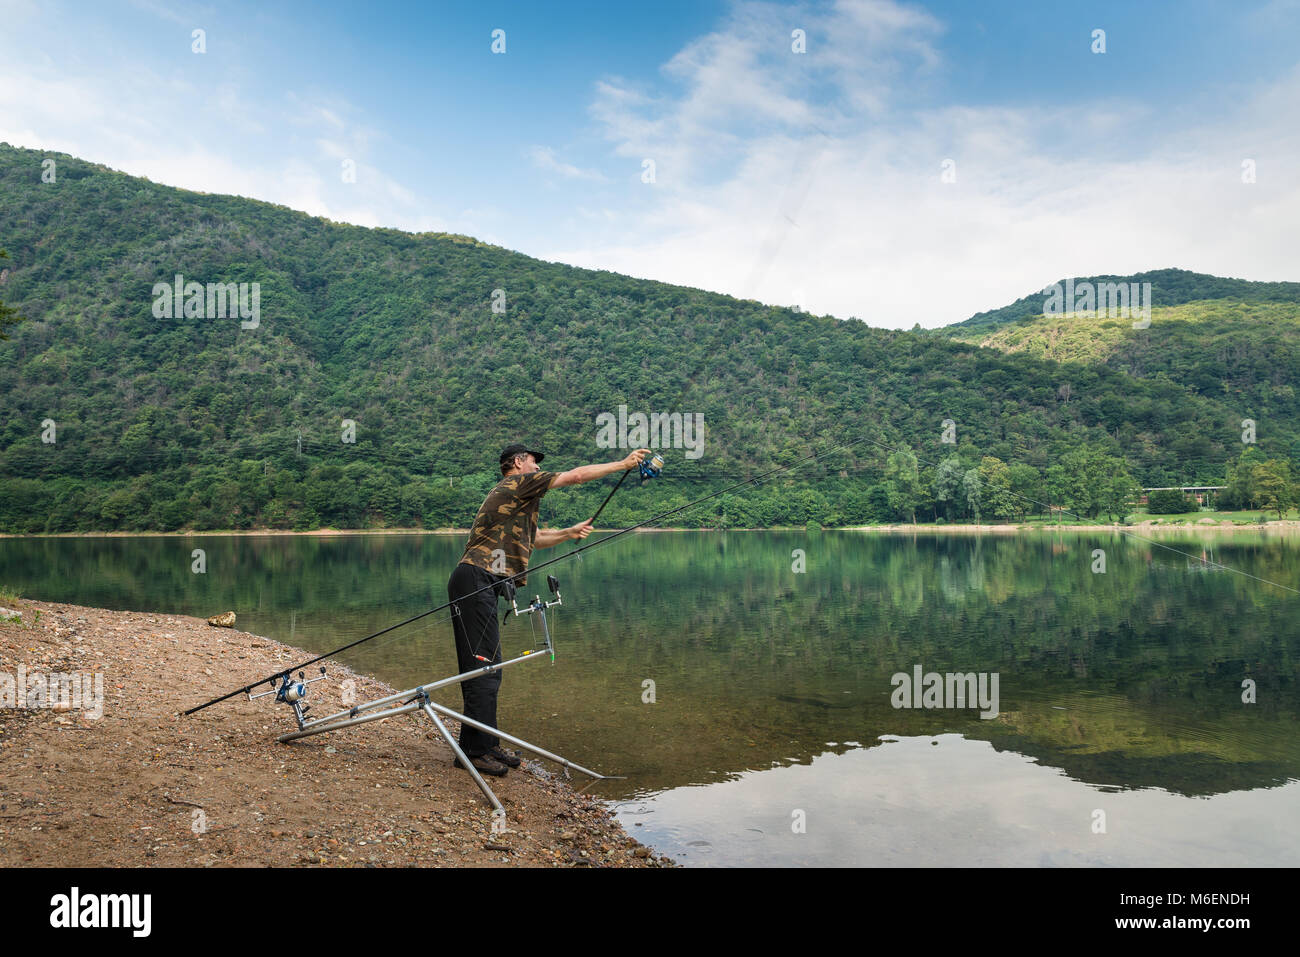 Aventures de pêche, pêche à la carpe. Angler avec t-shirt camouflage et une canne à pêche à la main, est l'appât casting Banque D'Images